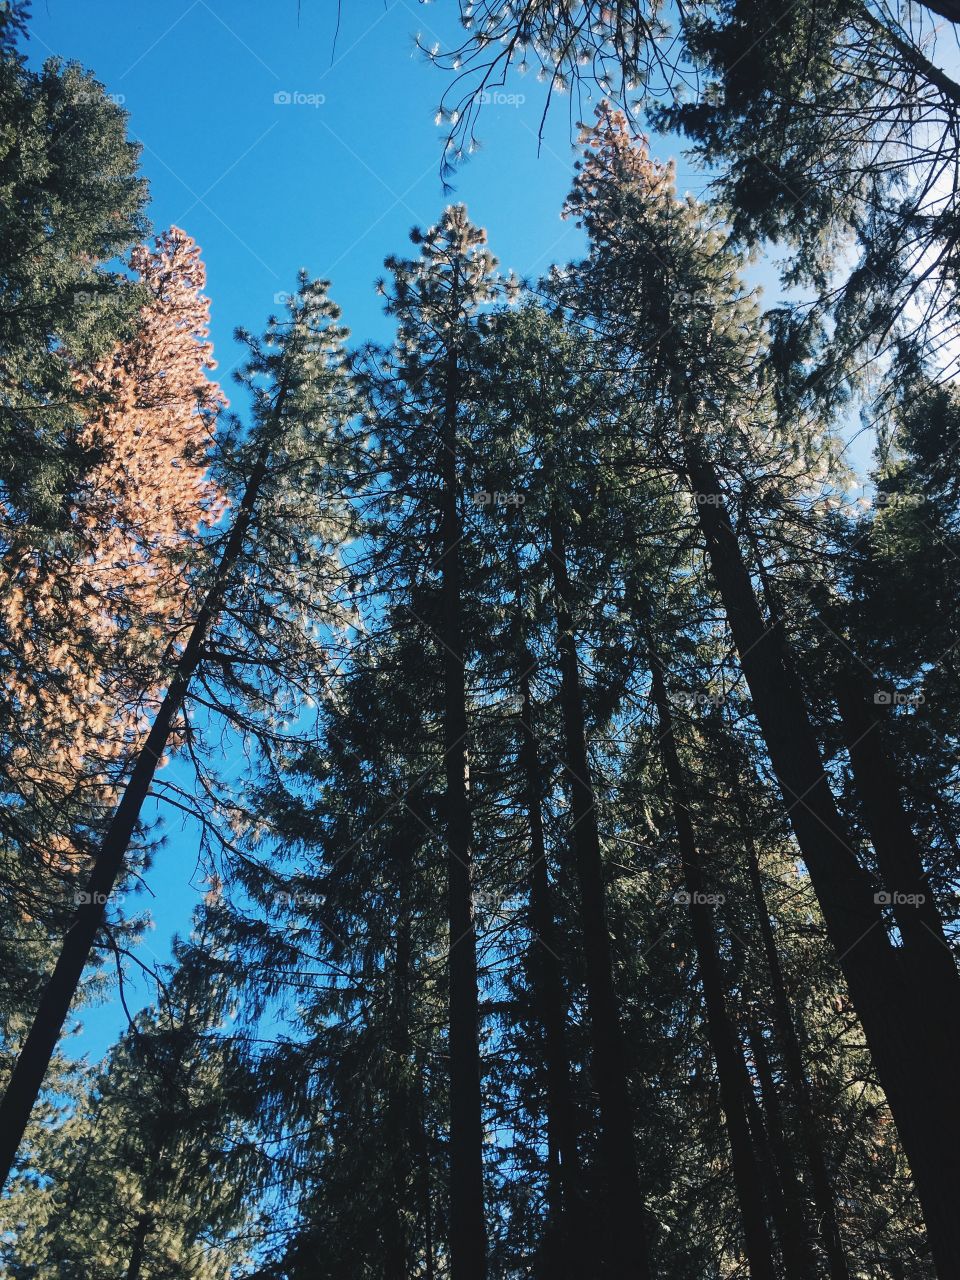 Sequoia 